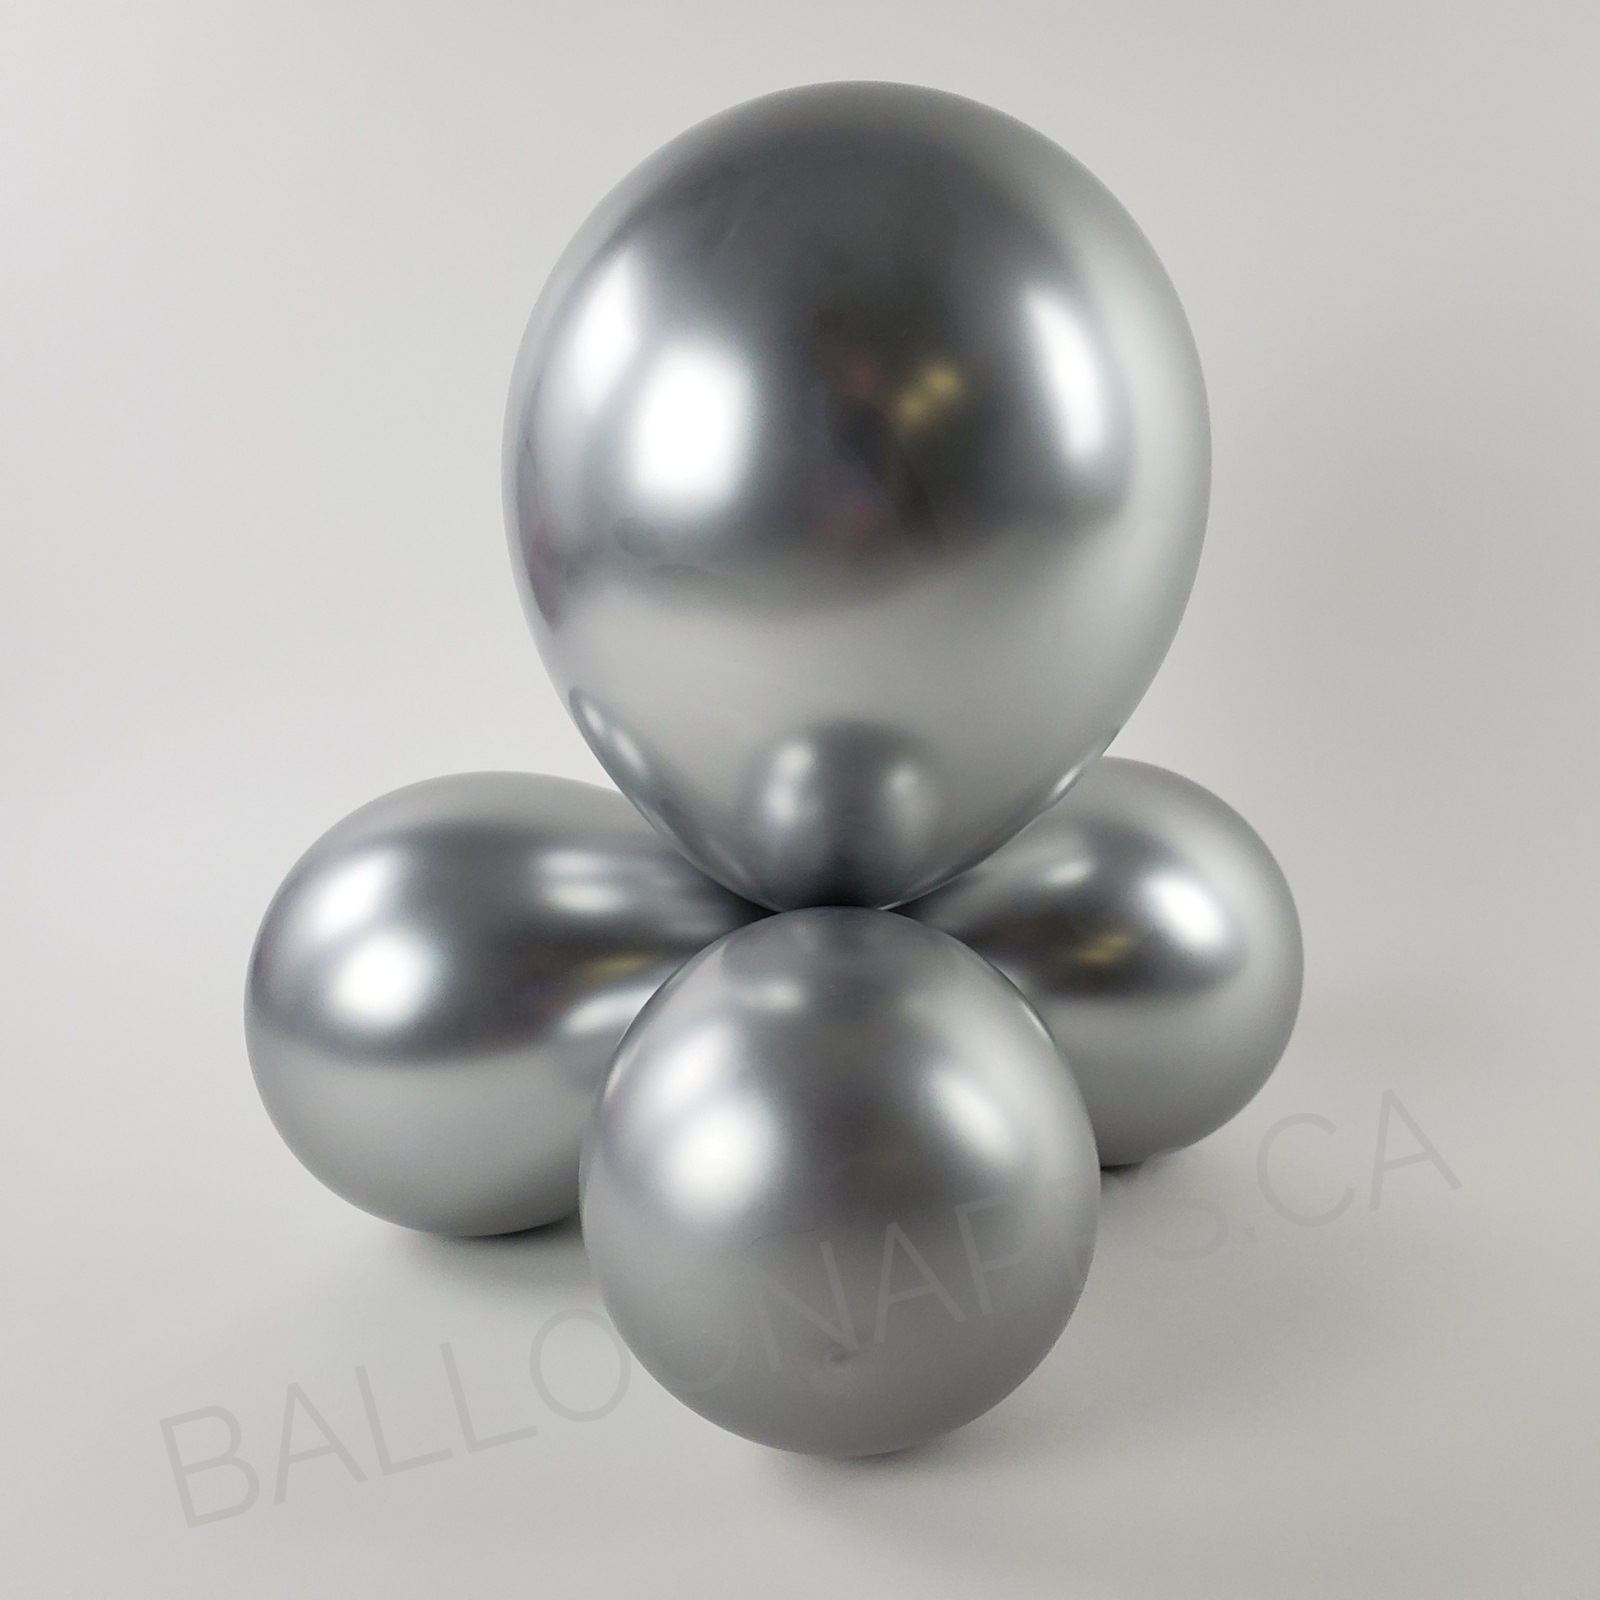 balloon texture Sempertex 260 Reflex Silver